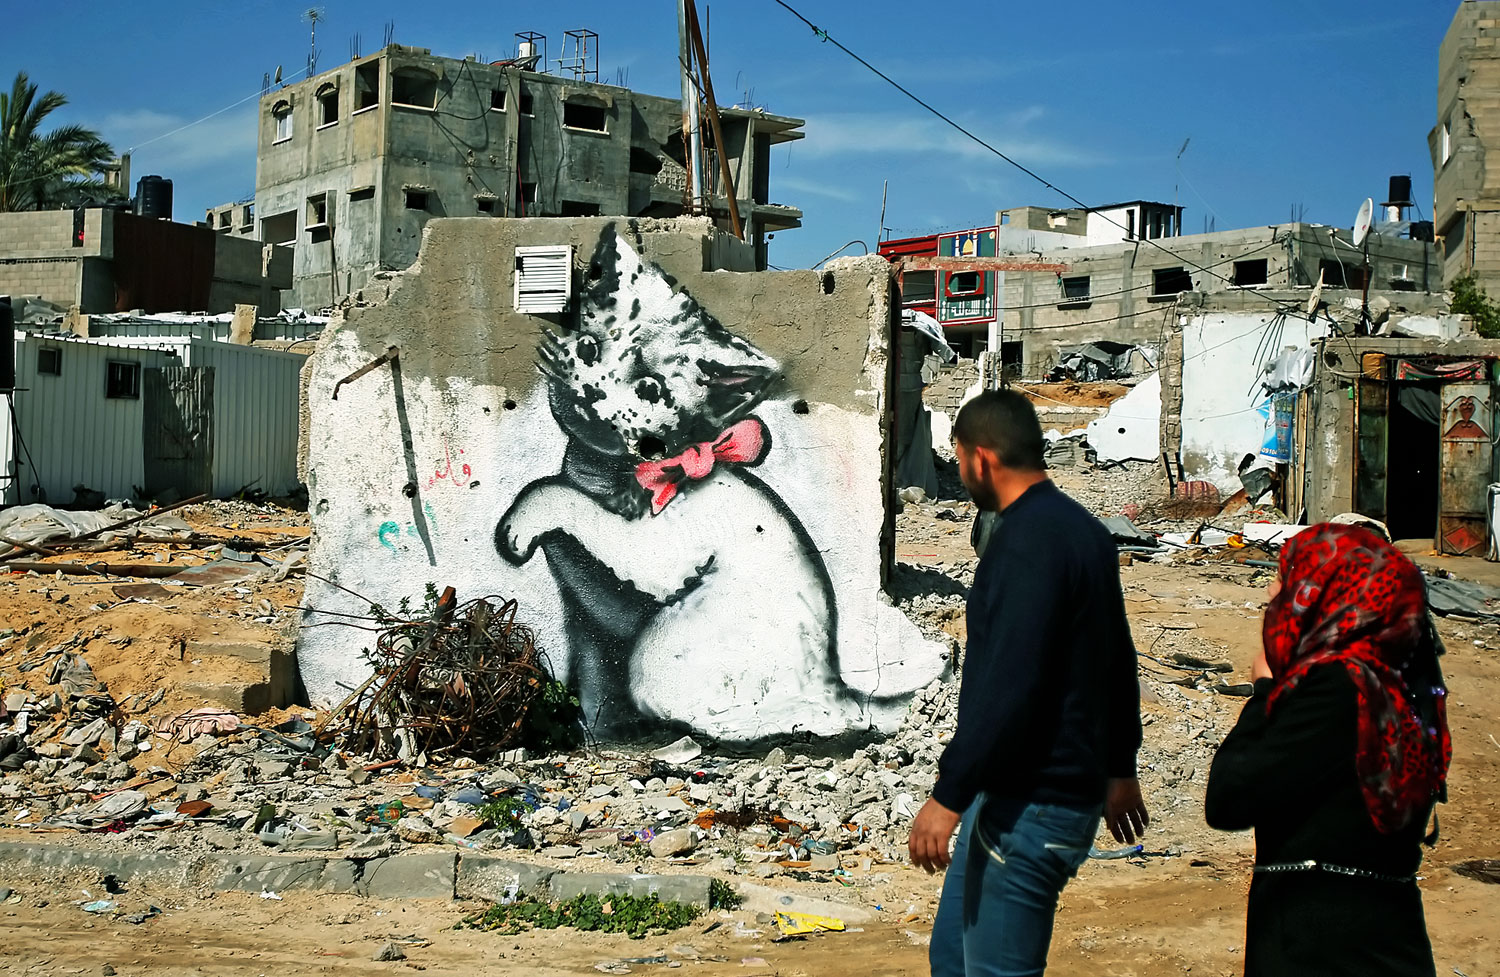 Amitől Banksy világhírű: falfestmény Gázában